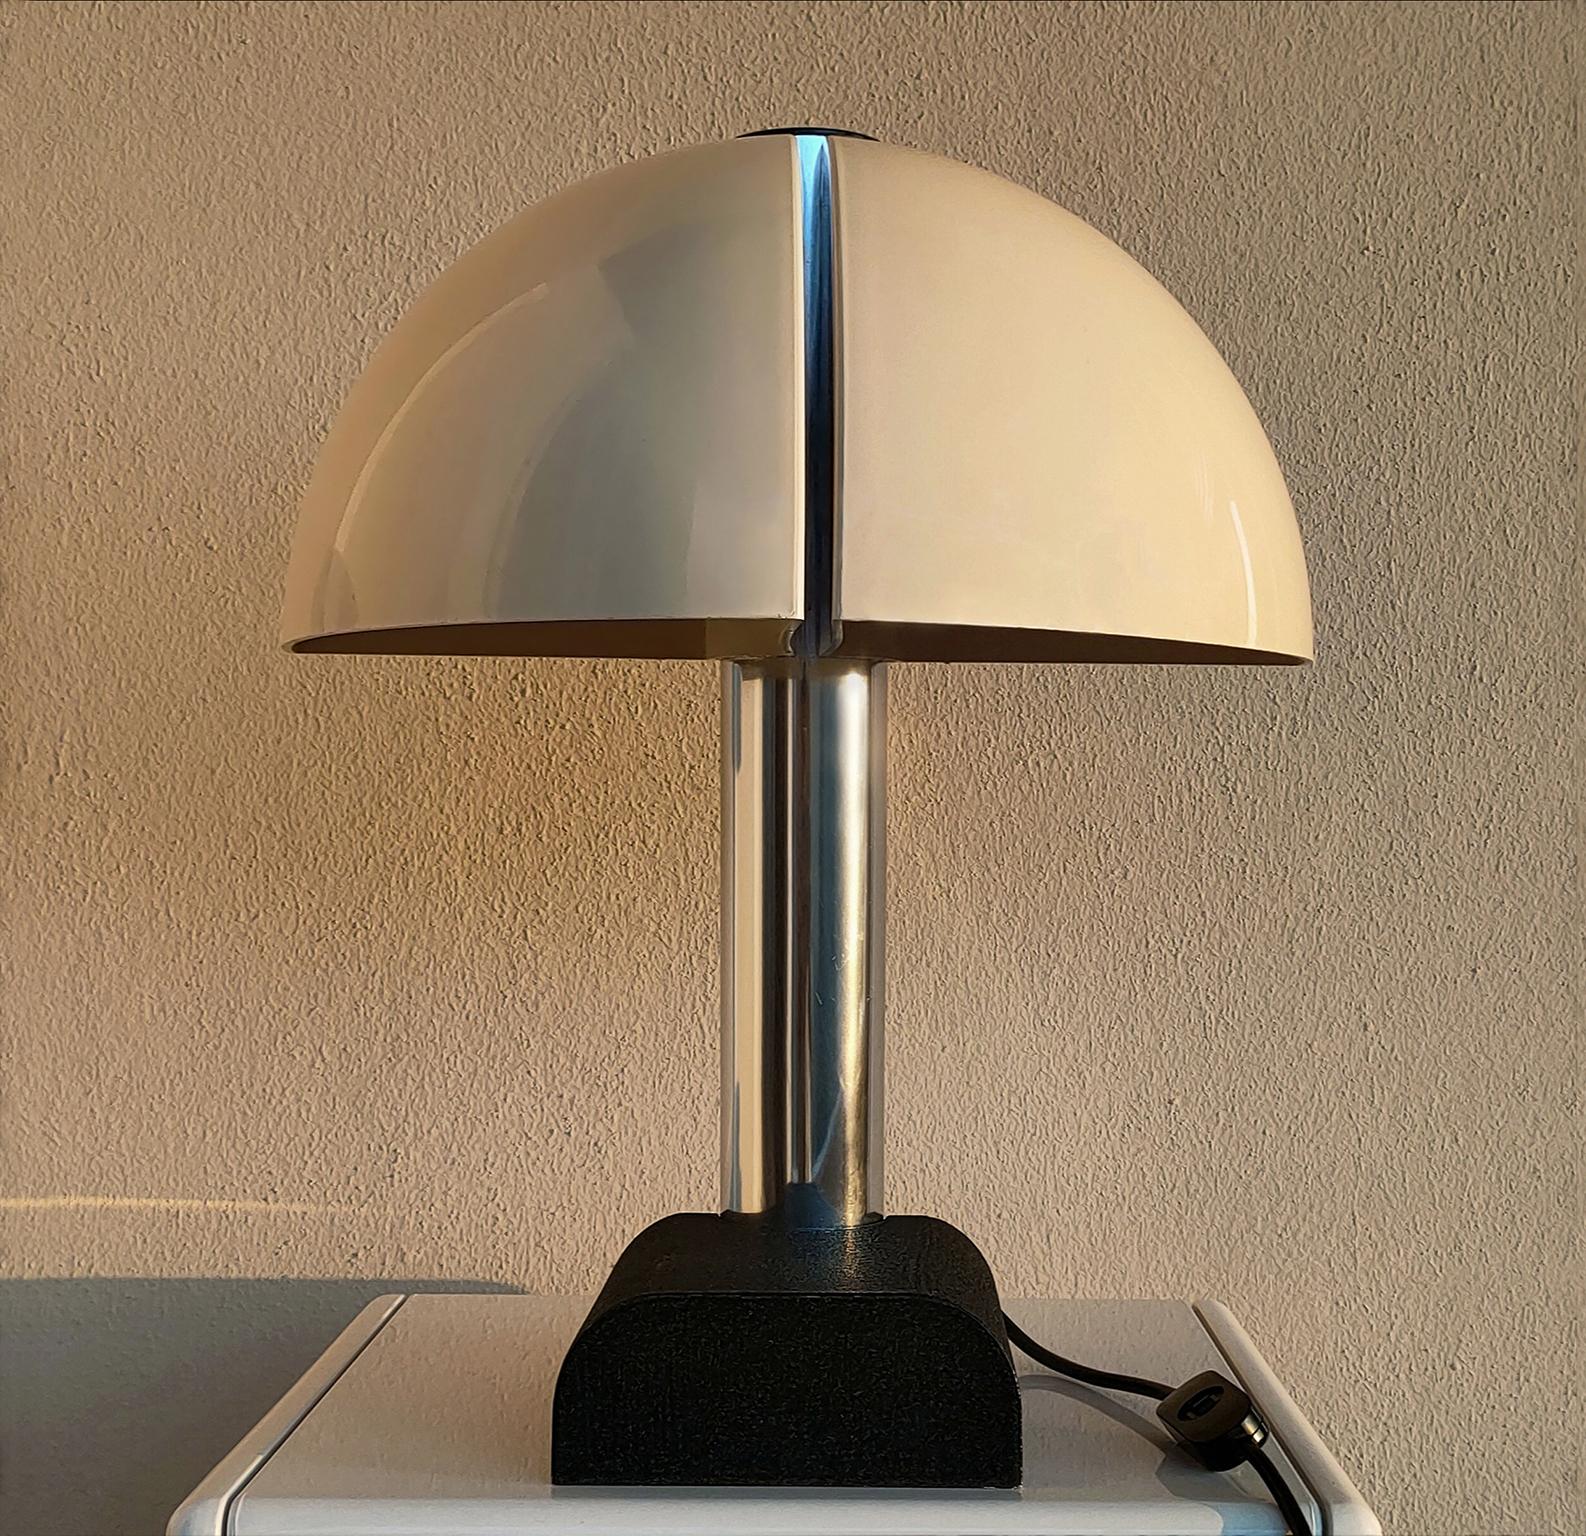 Lampe de table Spicchio conçue par les frères Aroldi (Danilo et
Corrado) au début des années 1970 et produite par la célèbre société italienne Stilnovo.

La lampe Spicchio présente une structure tubulaire en métal chromé, une base en métal laqué